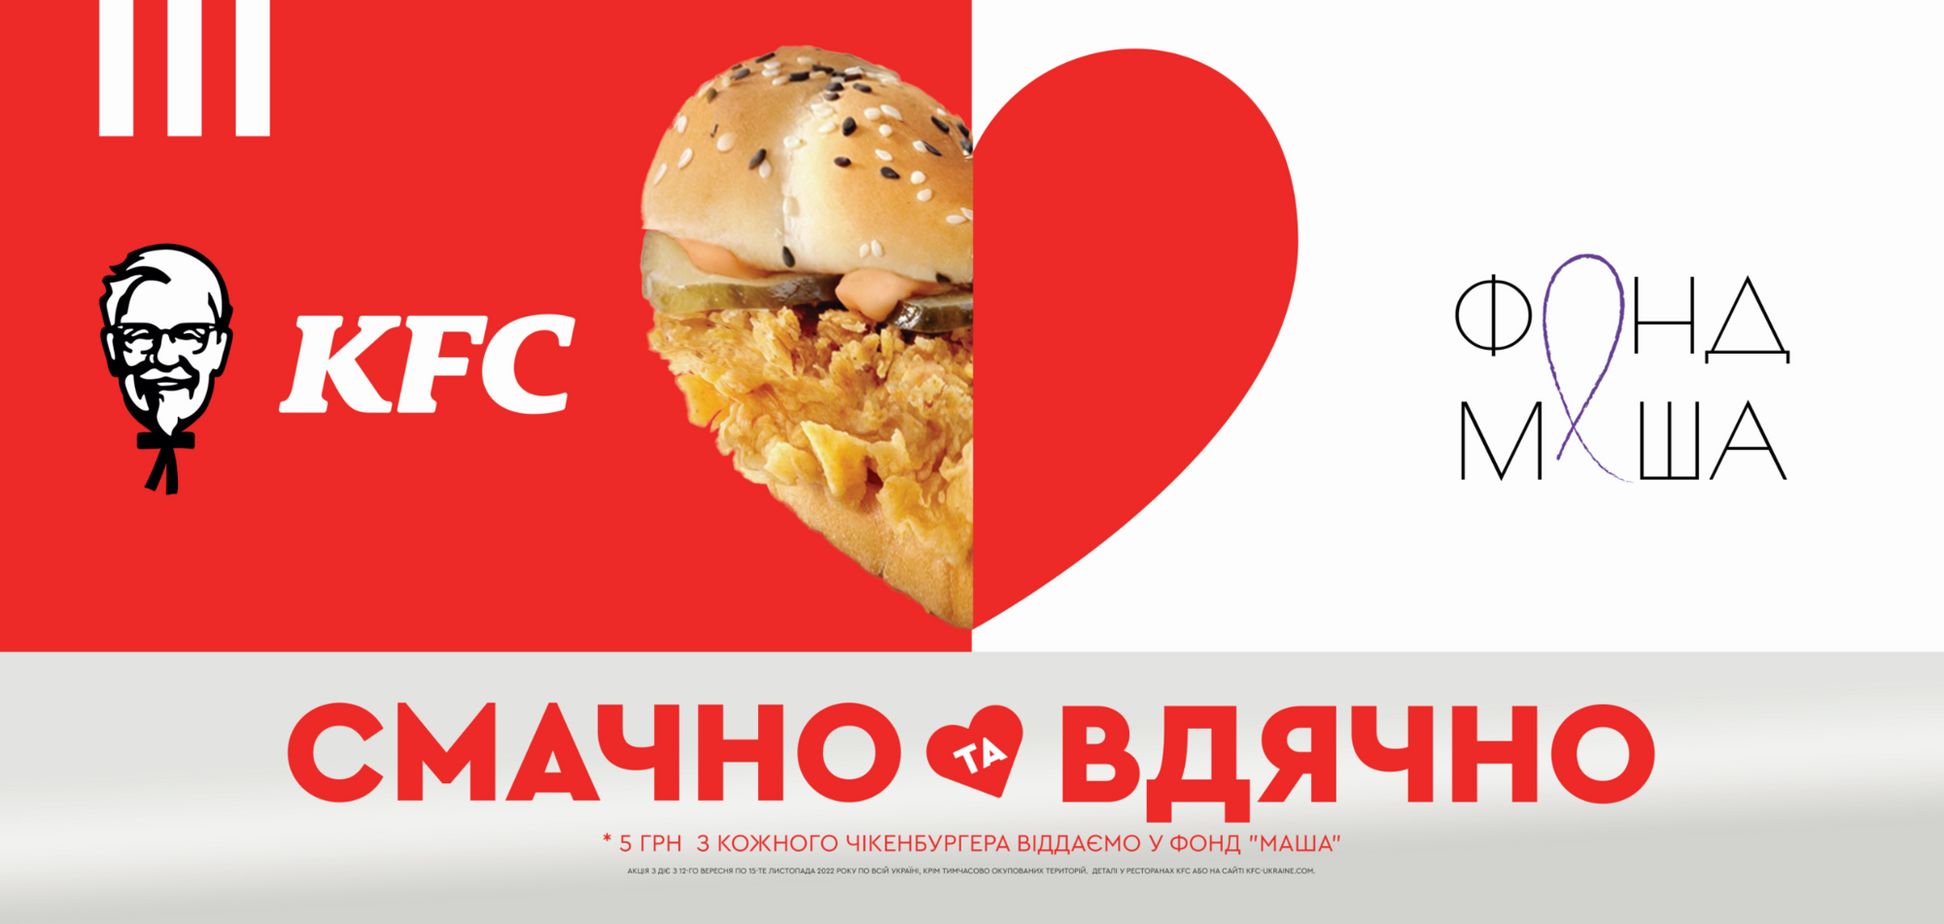 KFC присоединился к проекту 'Несокрушимая мама' и будет помогать украинкам с детьми, пострадавшими от войны